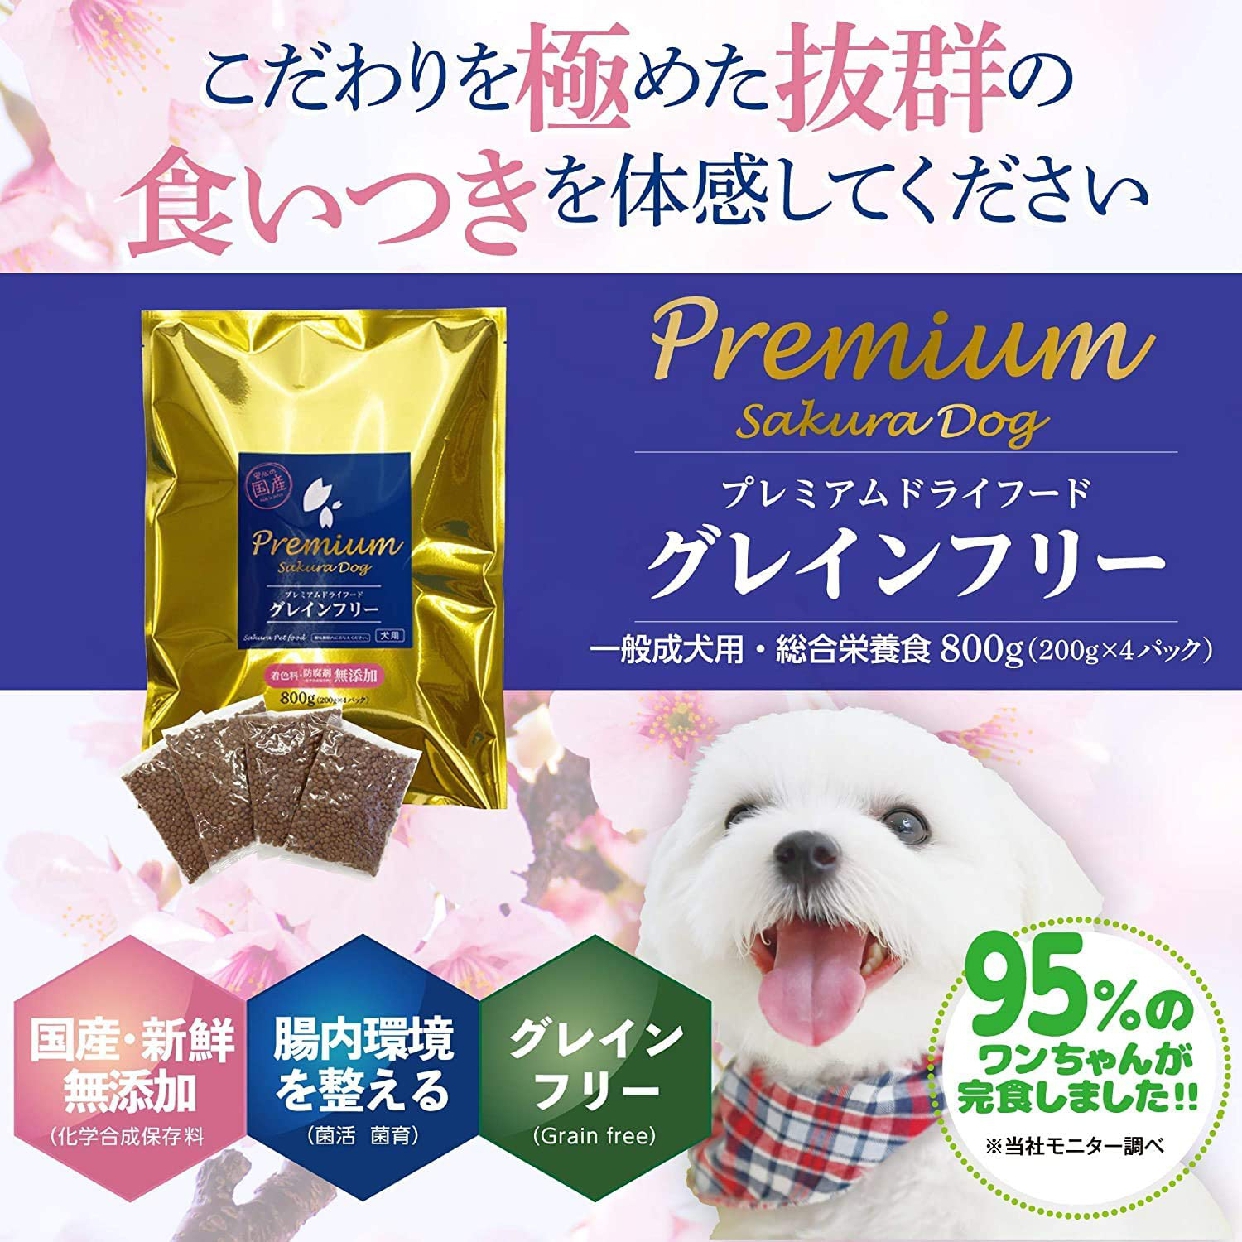 Sakura pet food(サクラペットフード) PREMIUM ドライフード グレインフリーの商品画像サムネ13 